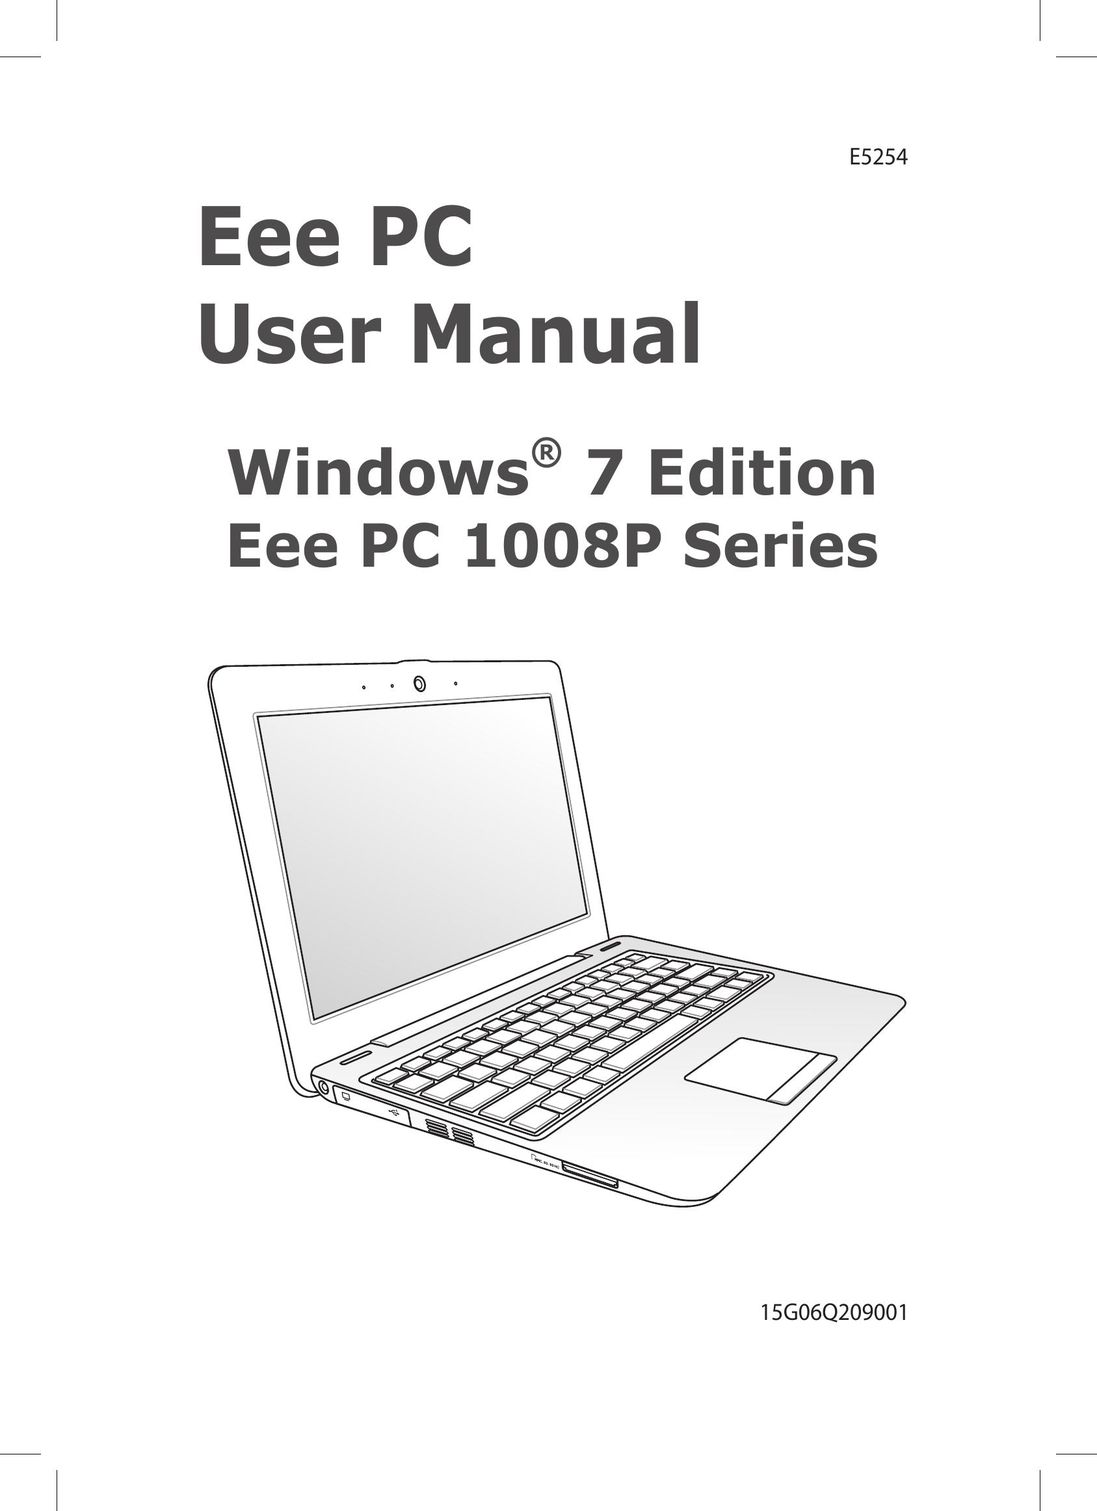 Asus 1008P-KR-PU27-PI Laptop User Manual